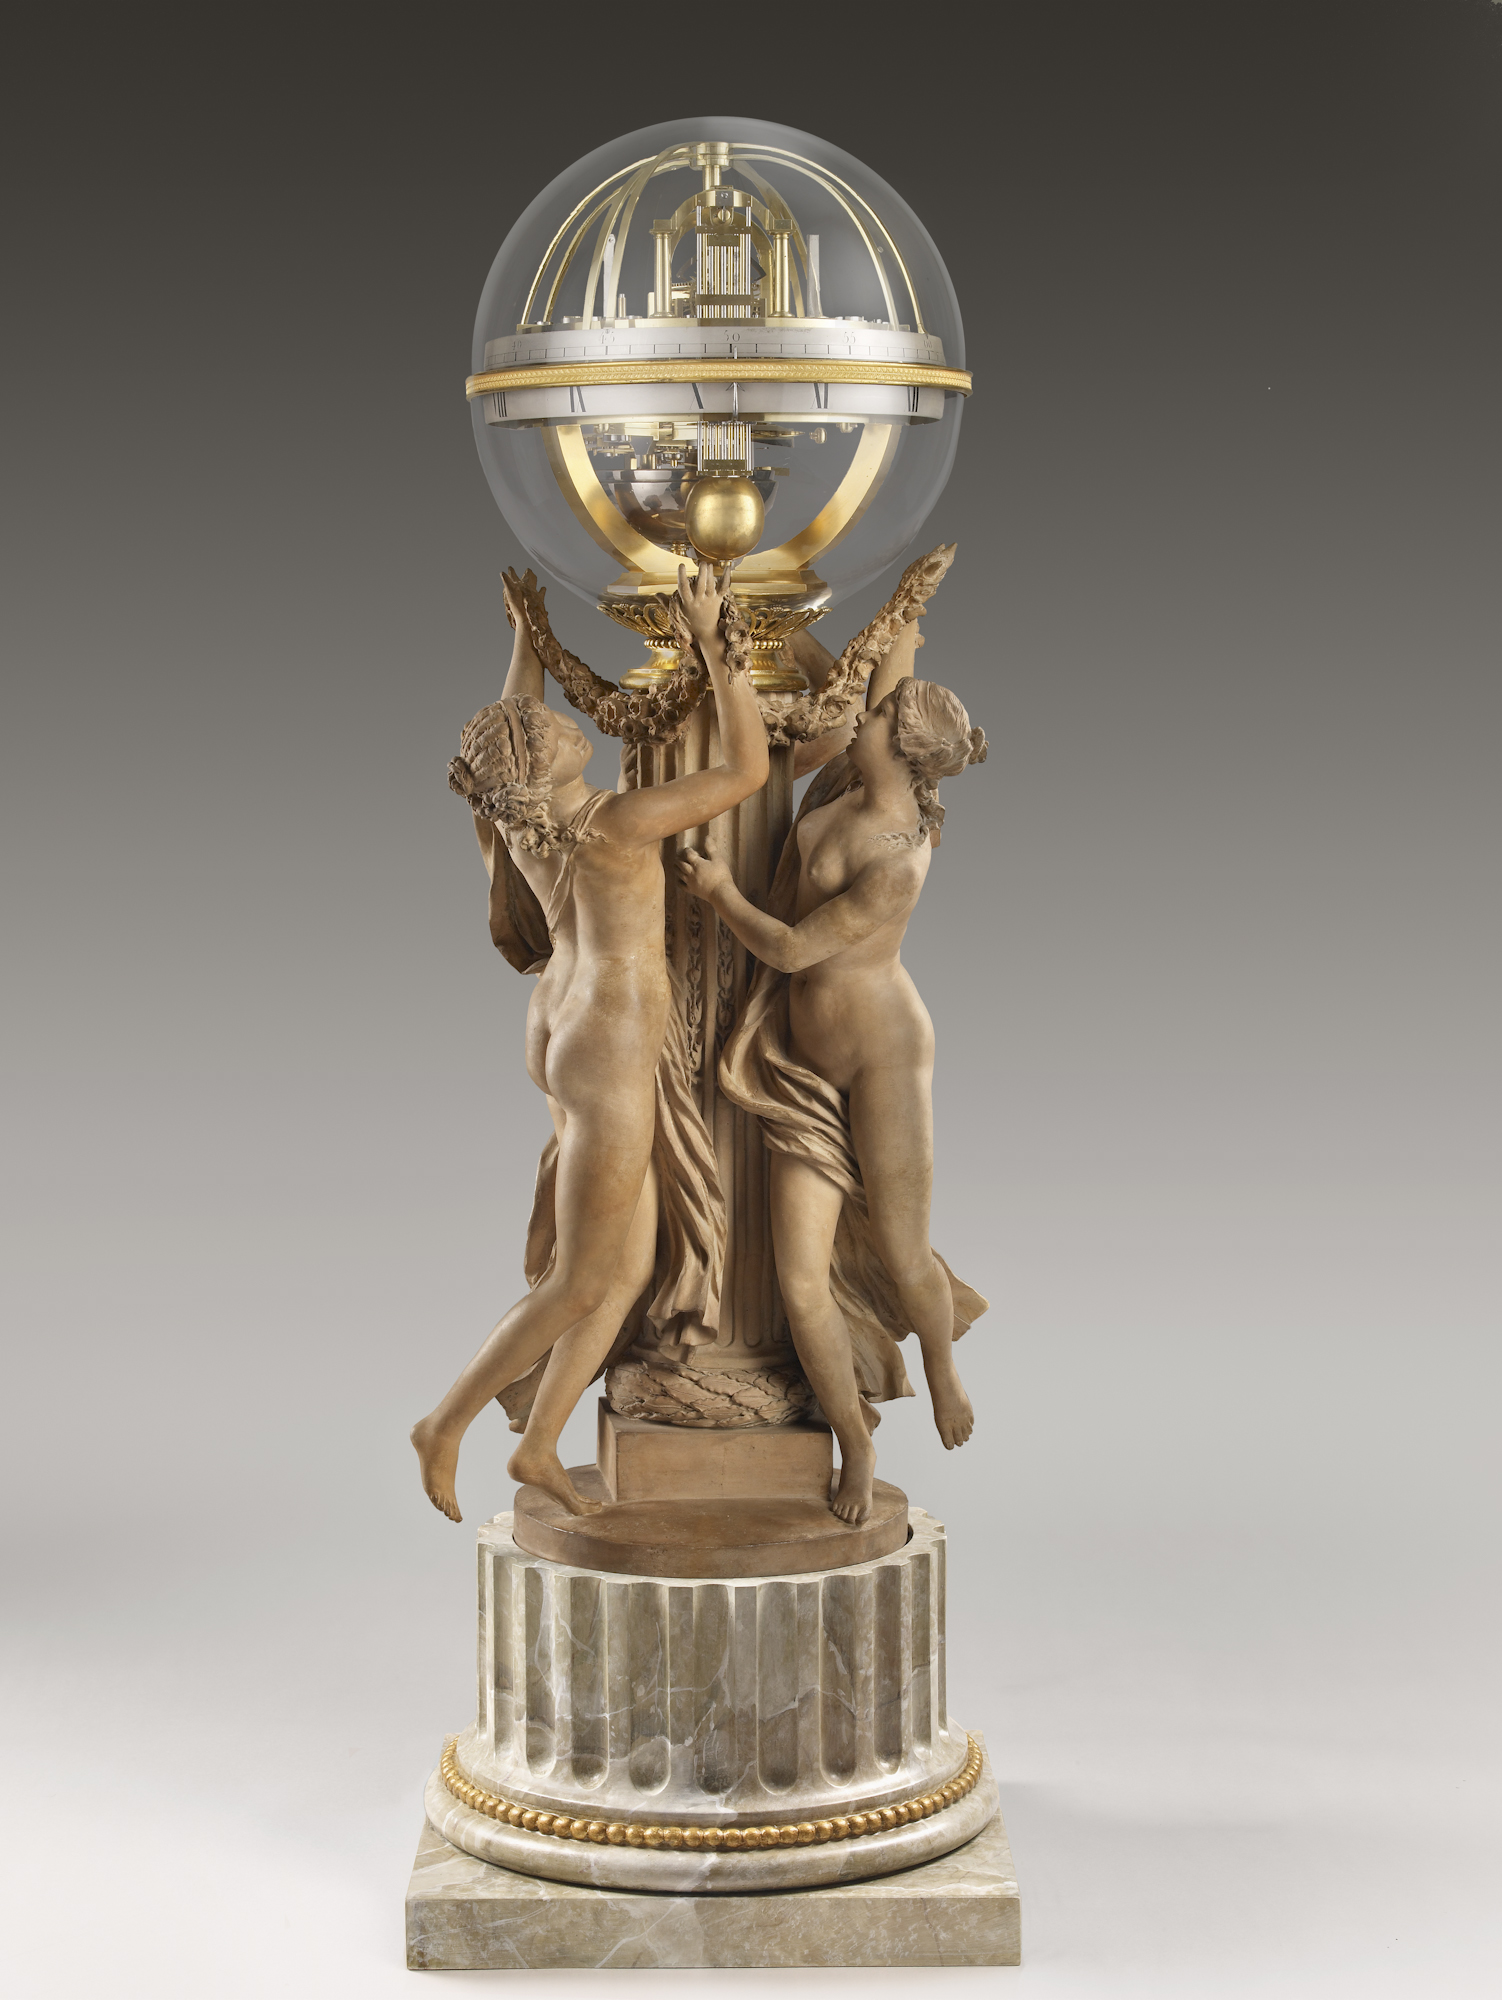 時の舞:時計を捧げ持つ3人の妖精たち by Claude Michel, called Clodion - 1788年 - 103.5 cm 